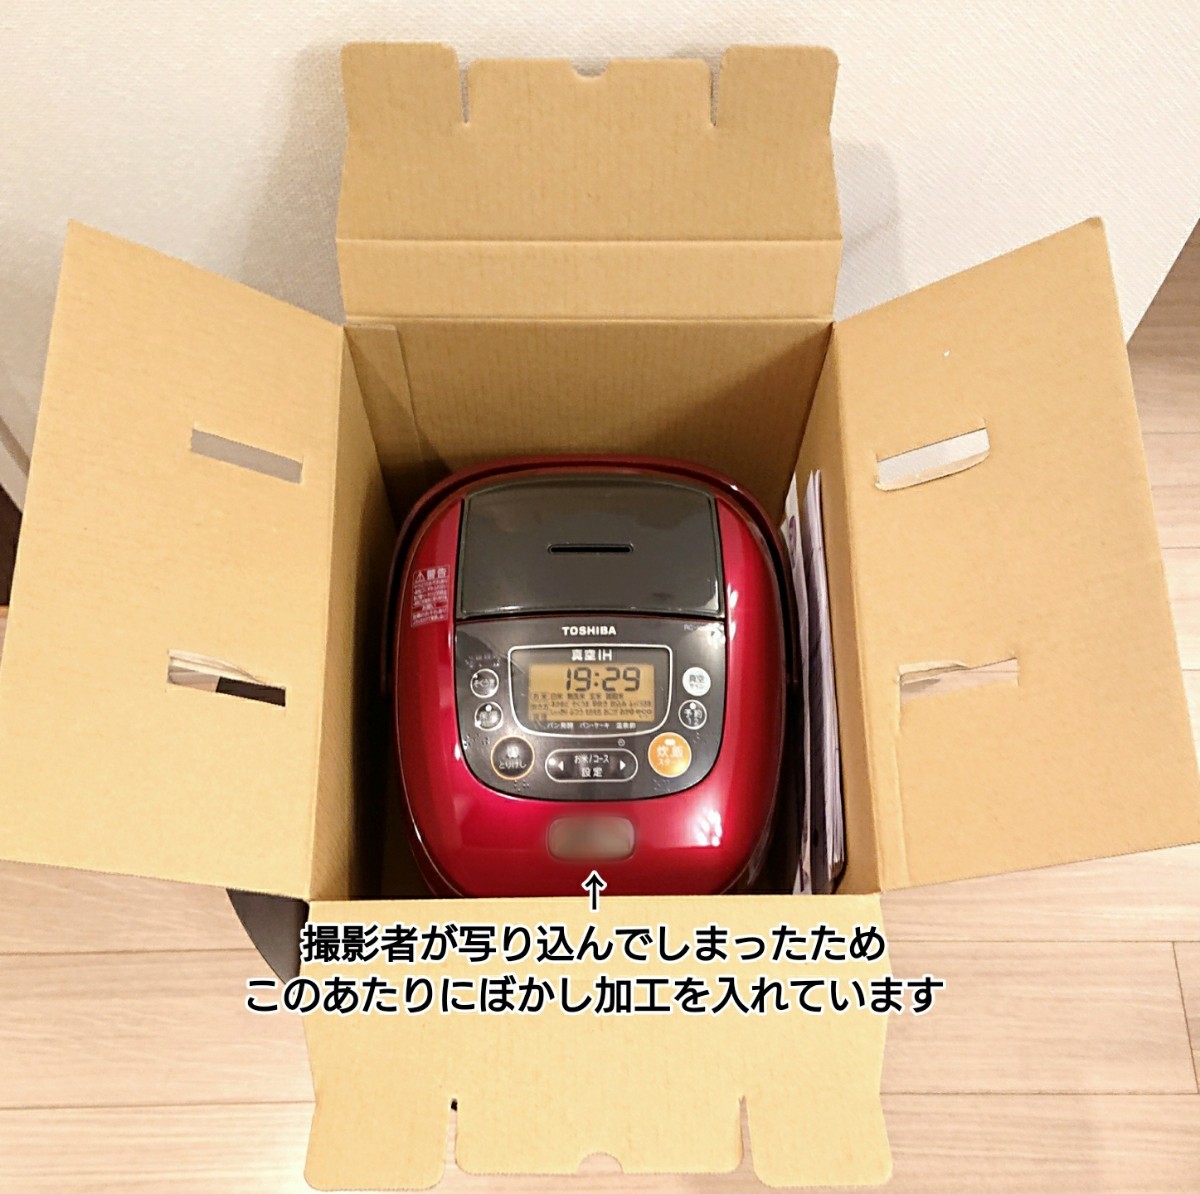 東芝 真空IH炊飯器 RC-10VRF 5.5号炊き グランレッド